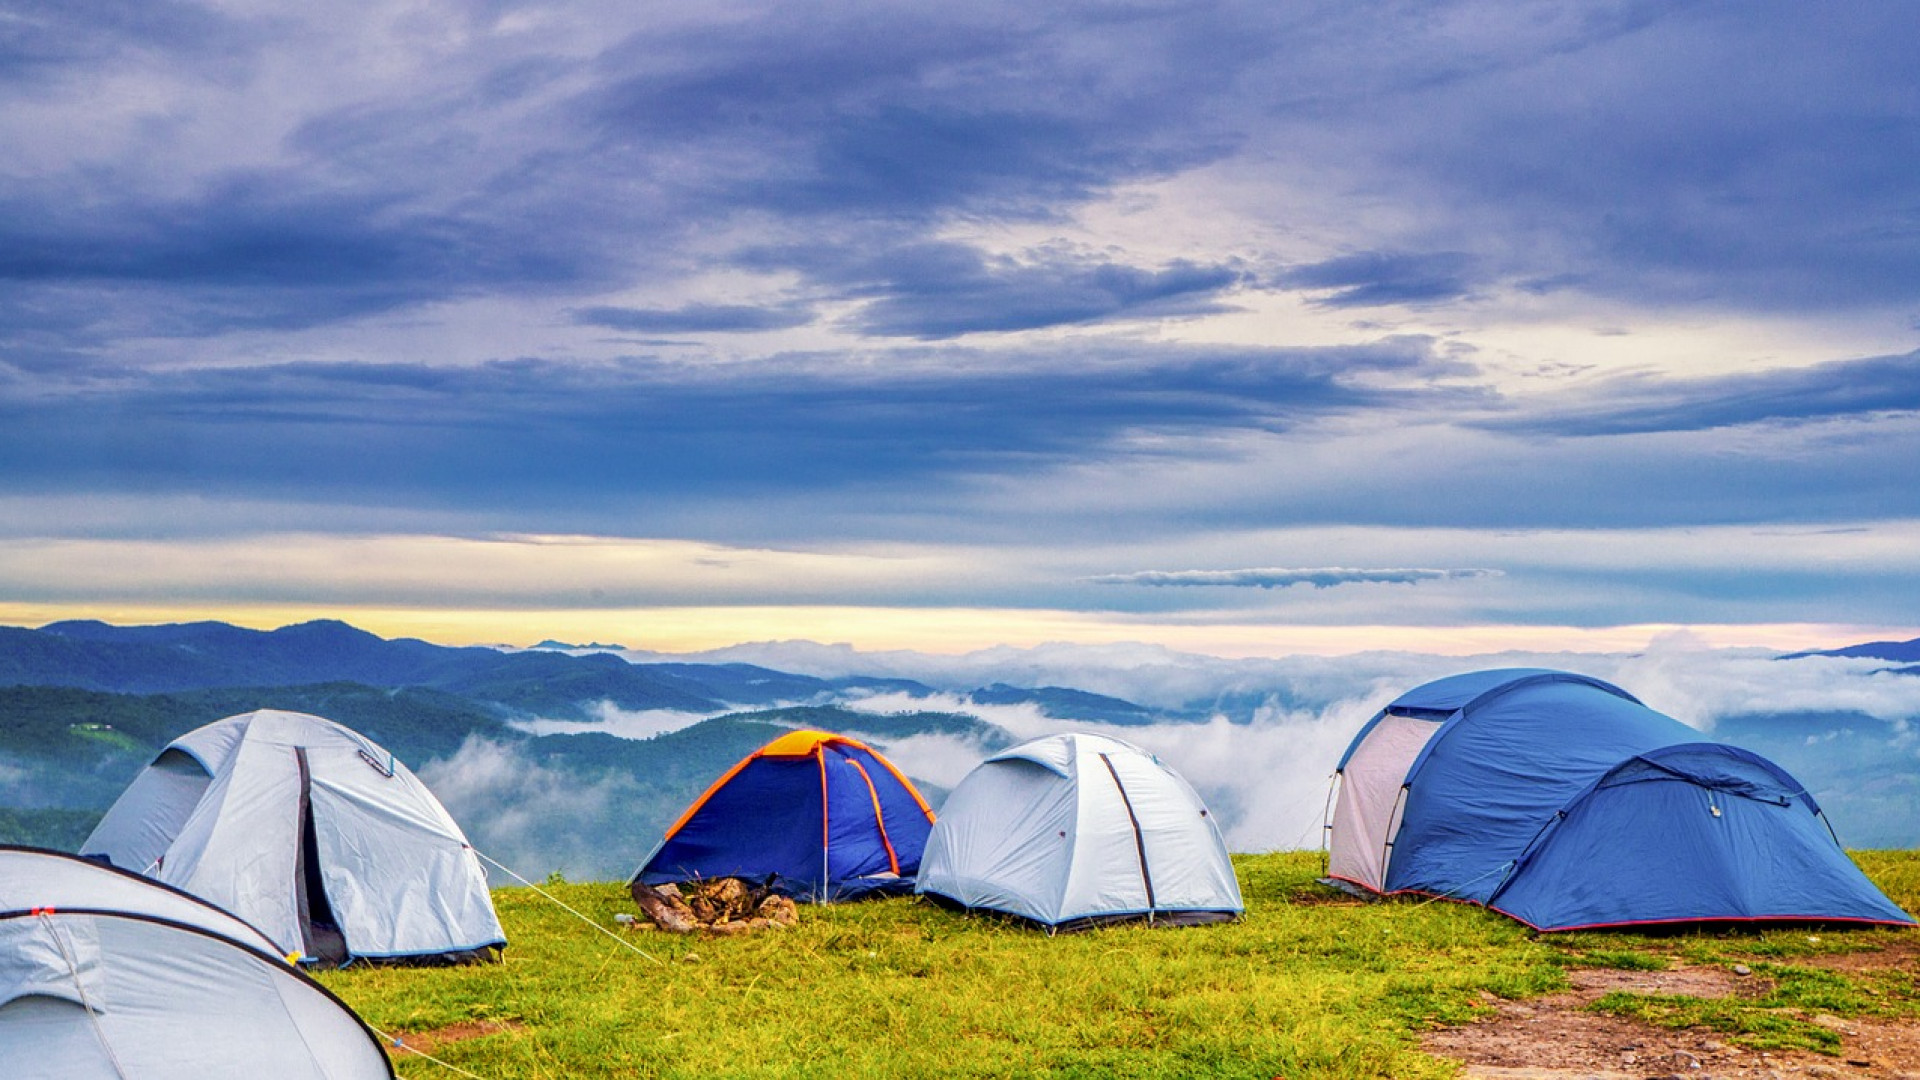 Réservez votre camping au téléphone pour éviter les arnaques